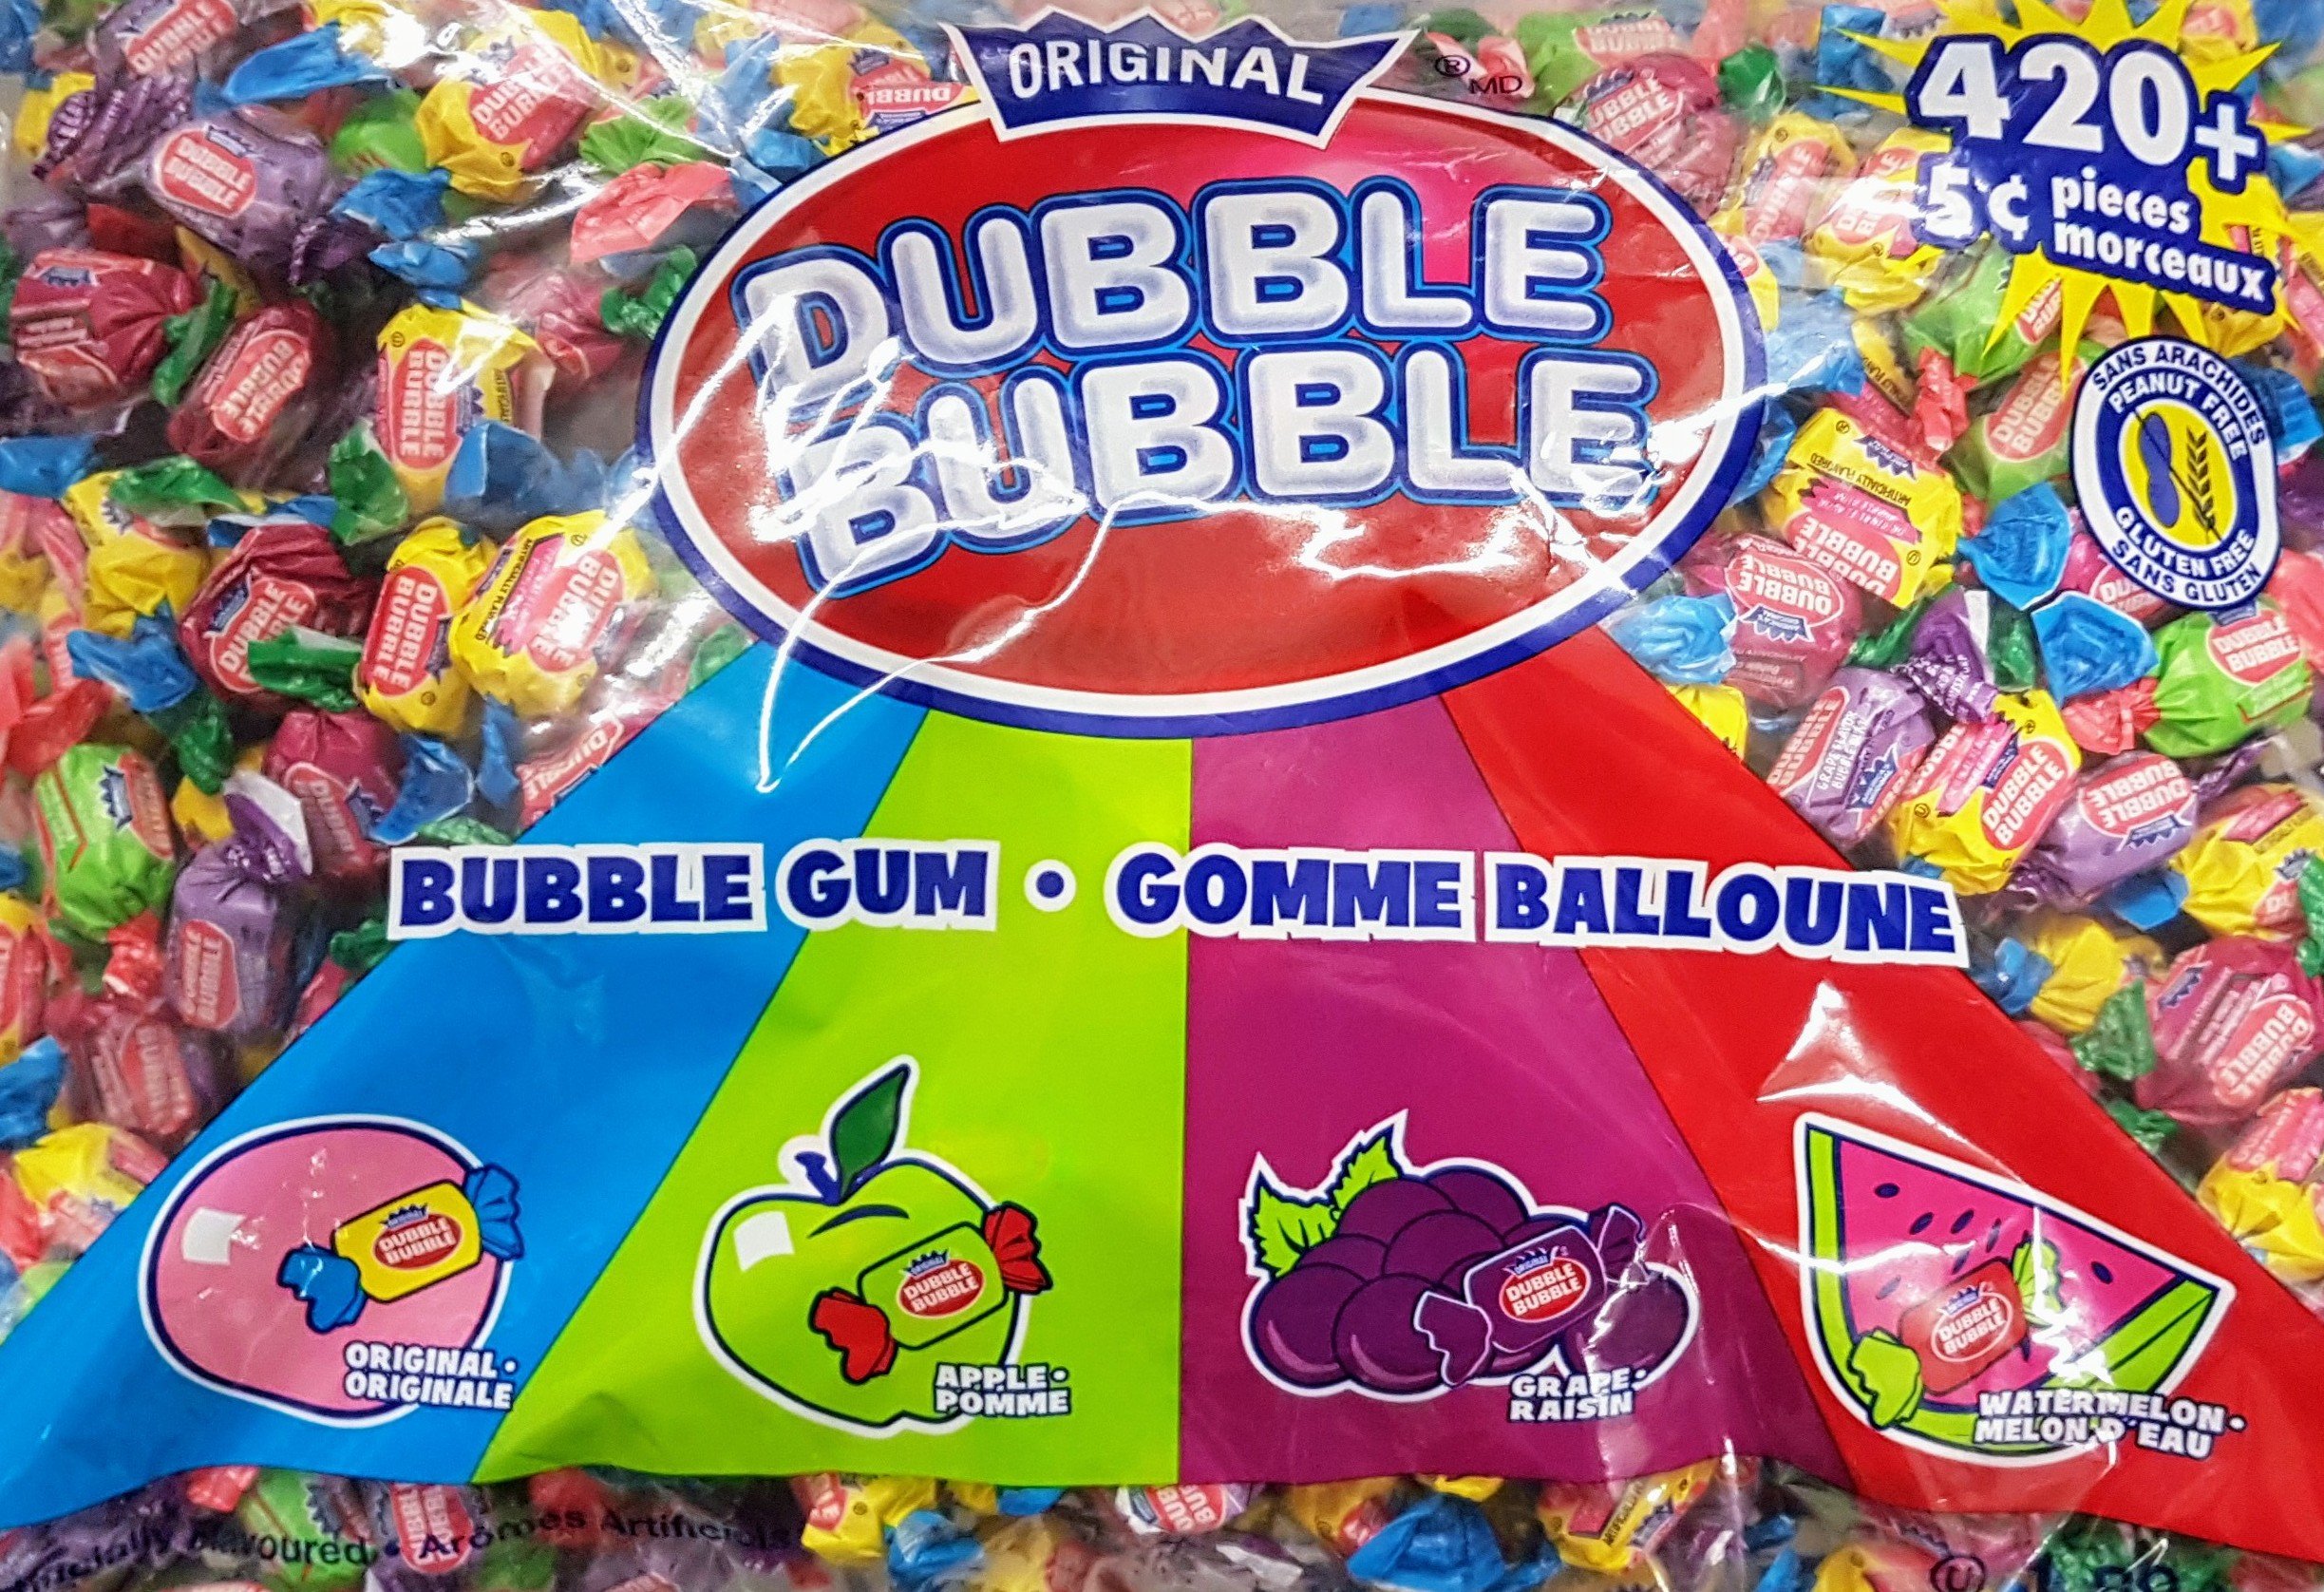 double bubble